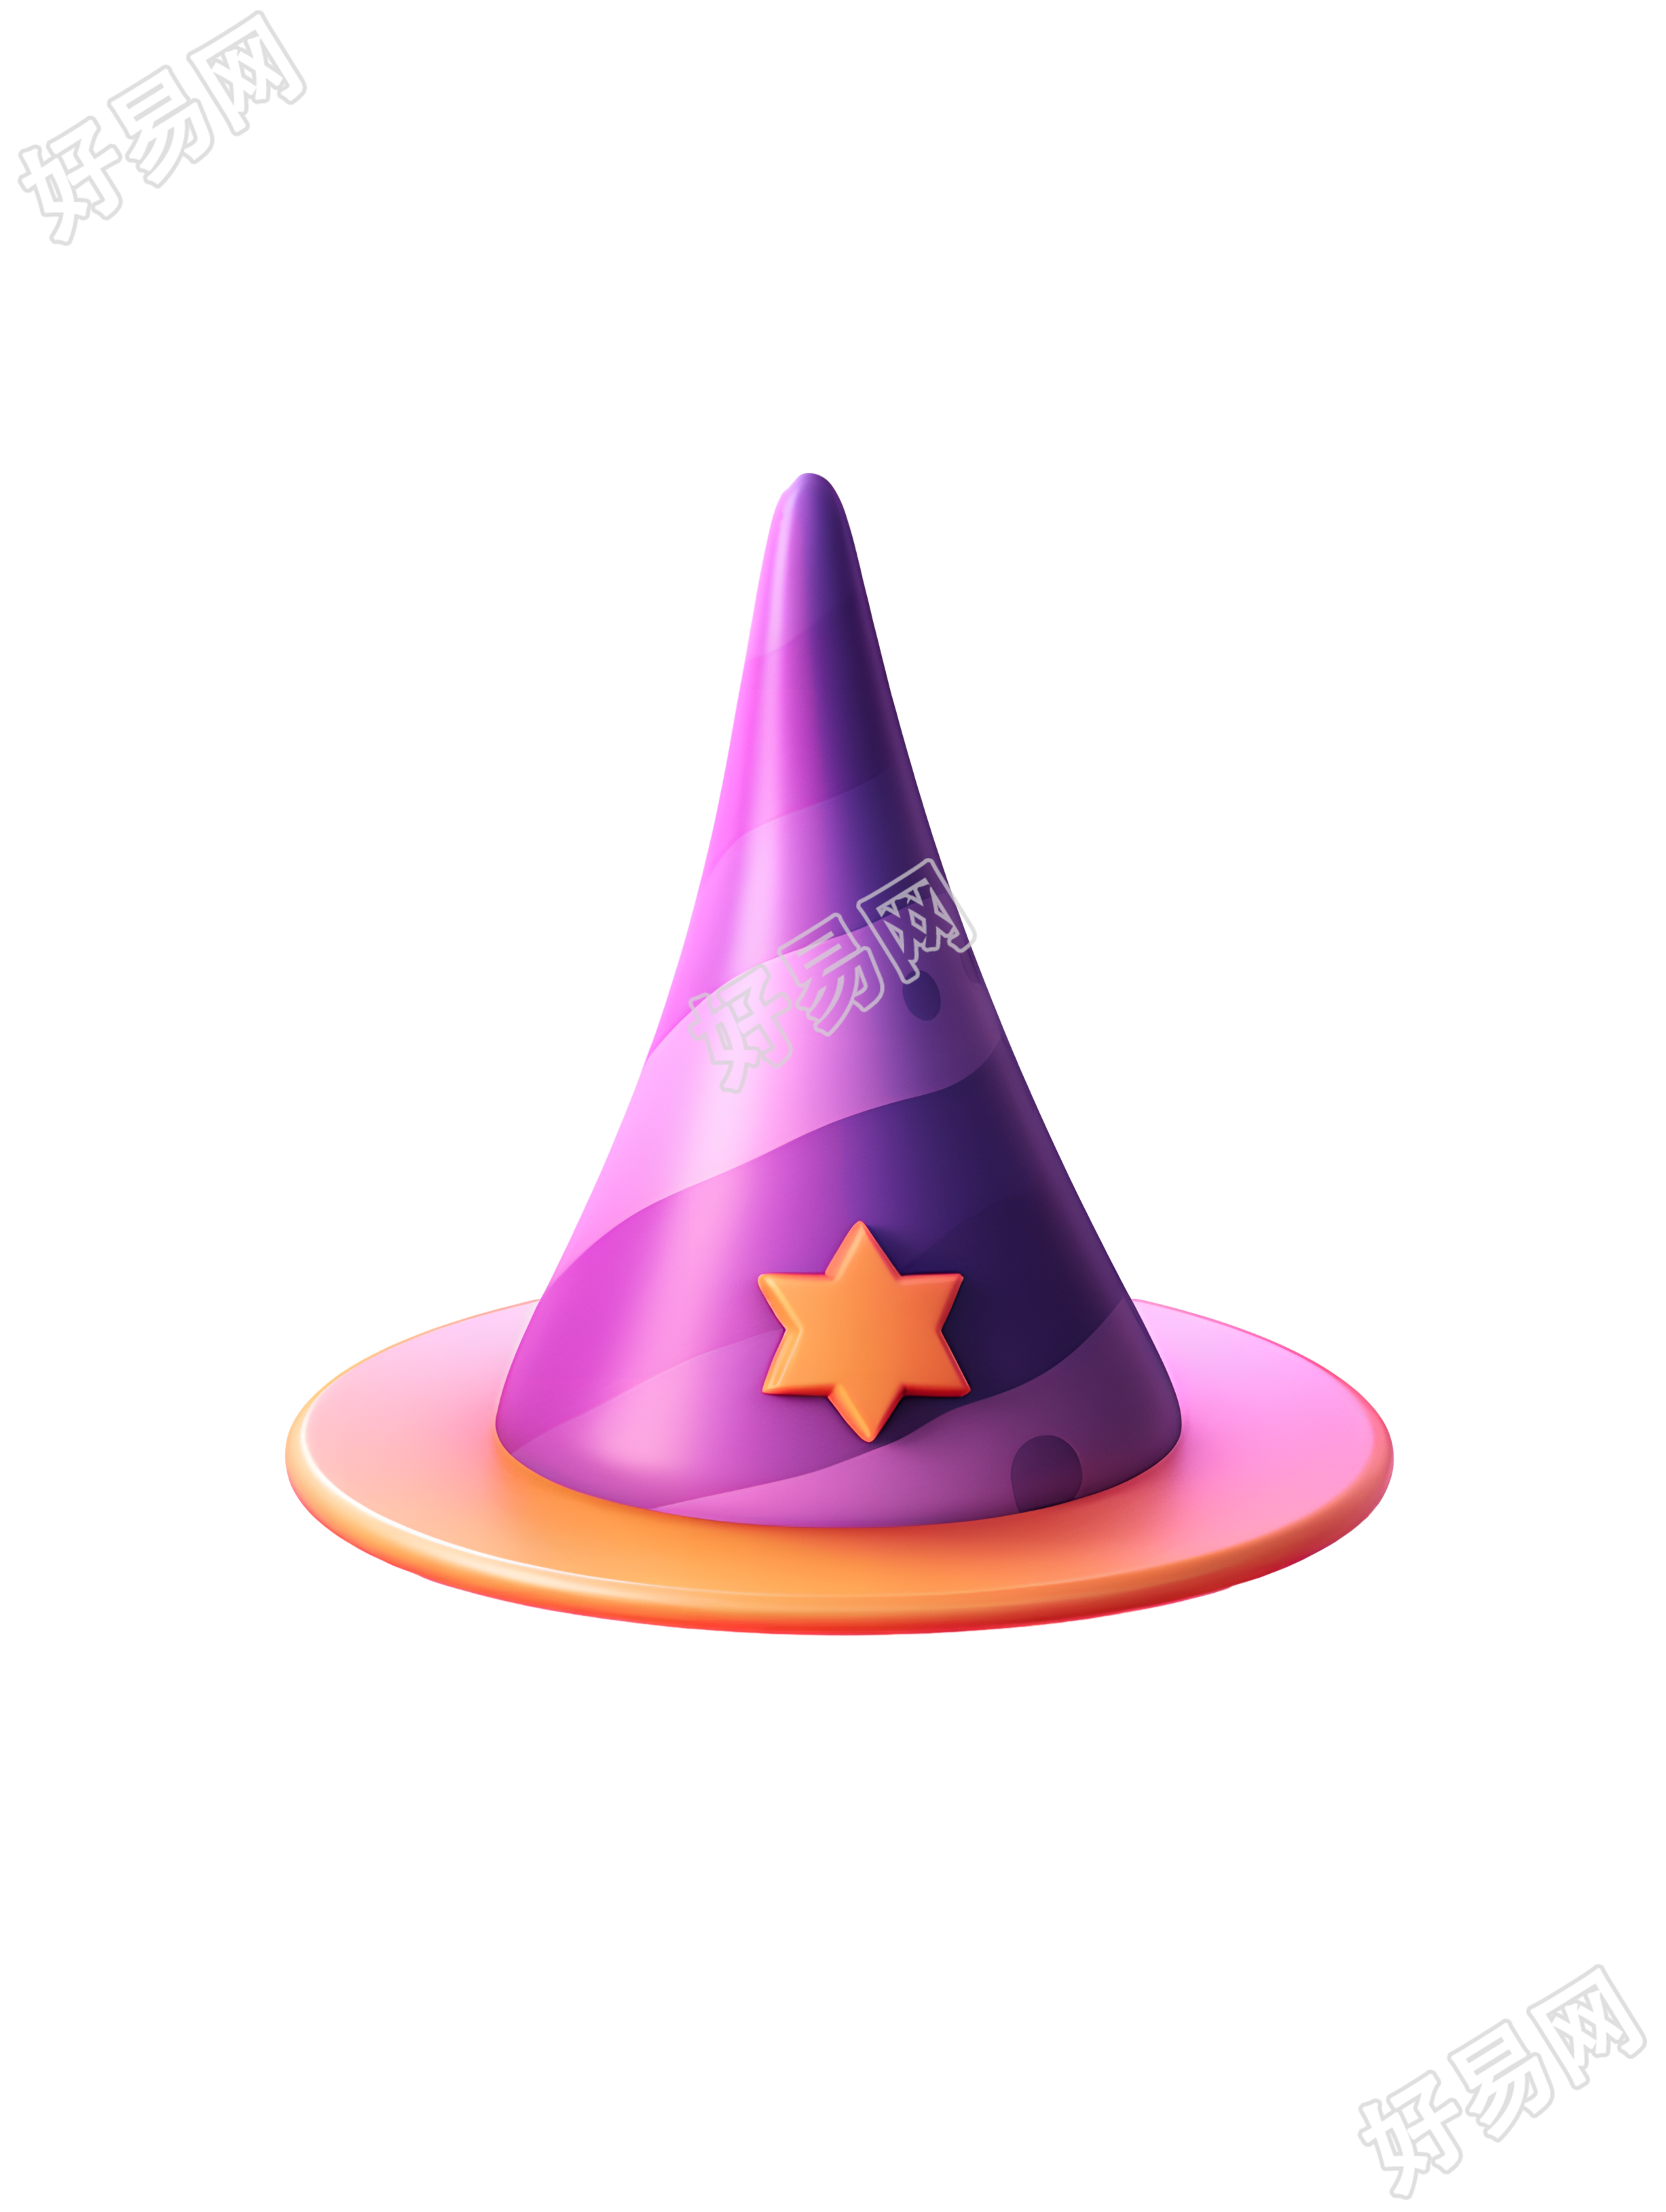 巫师帽形状的万圣节糖果PNG素材